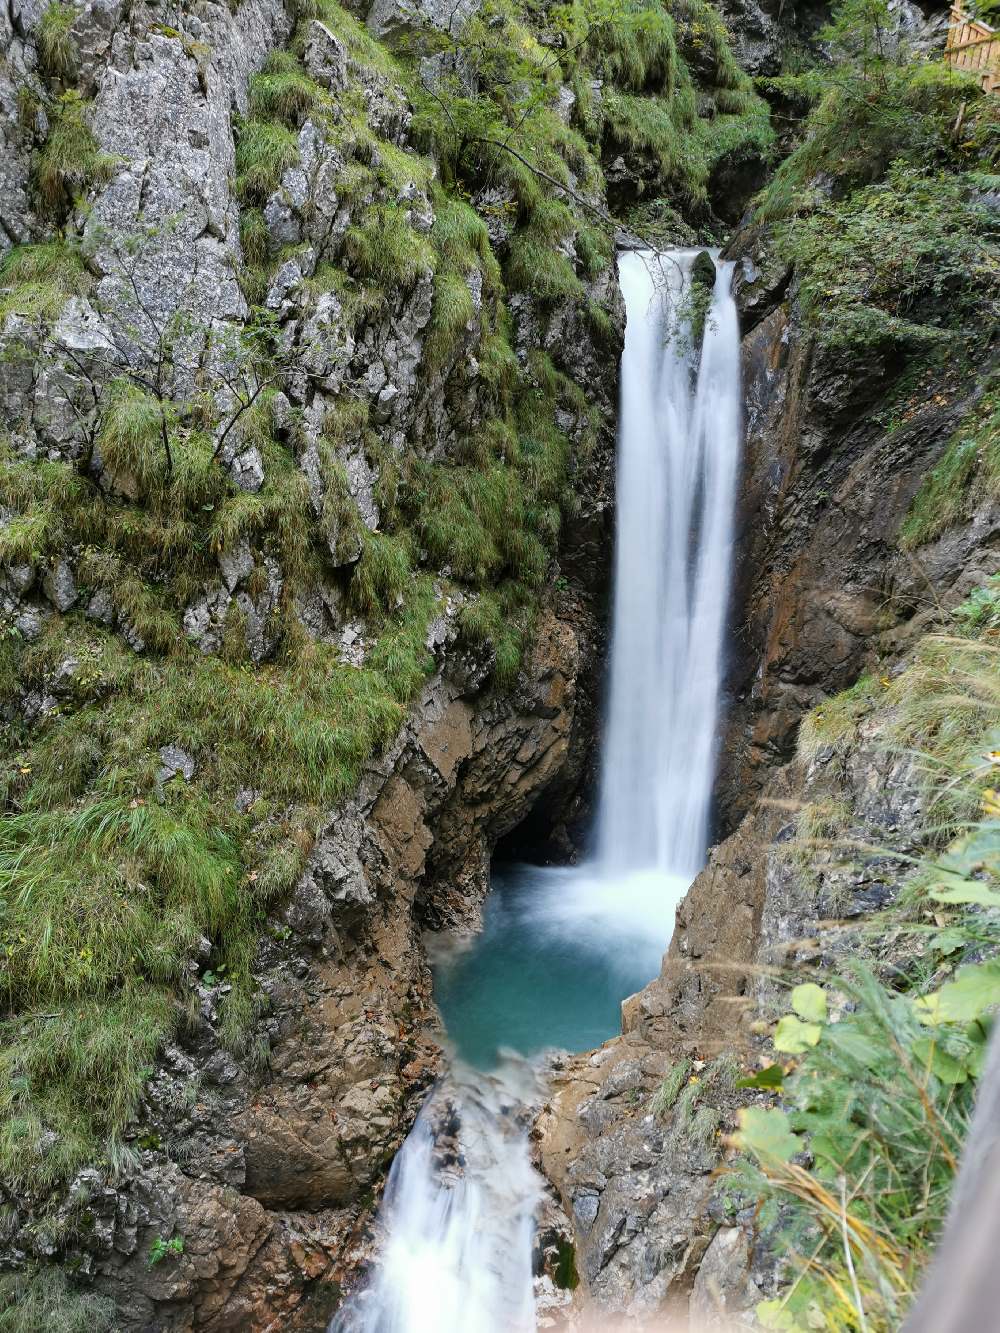 Cascate del Tirolo: le cascate nella gola sono alte diversi metri